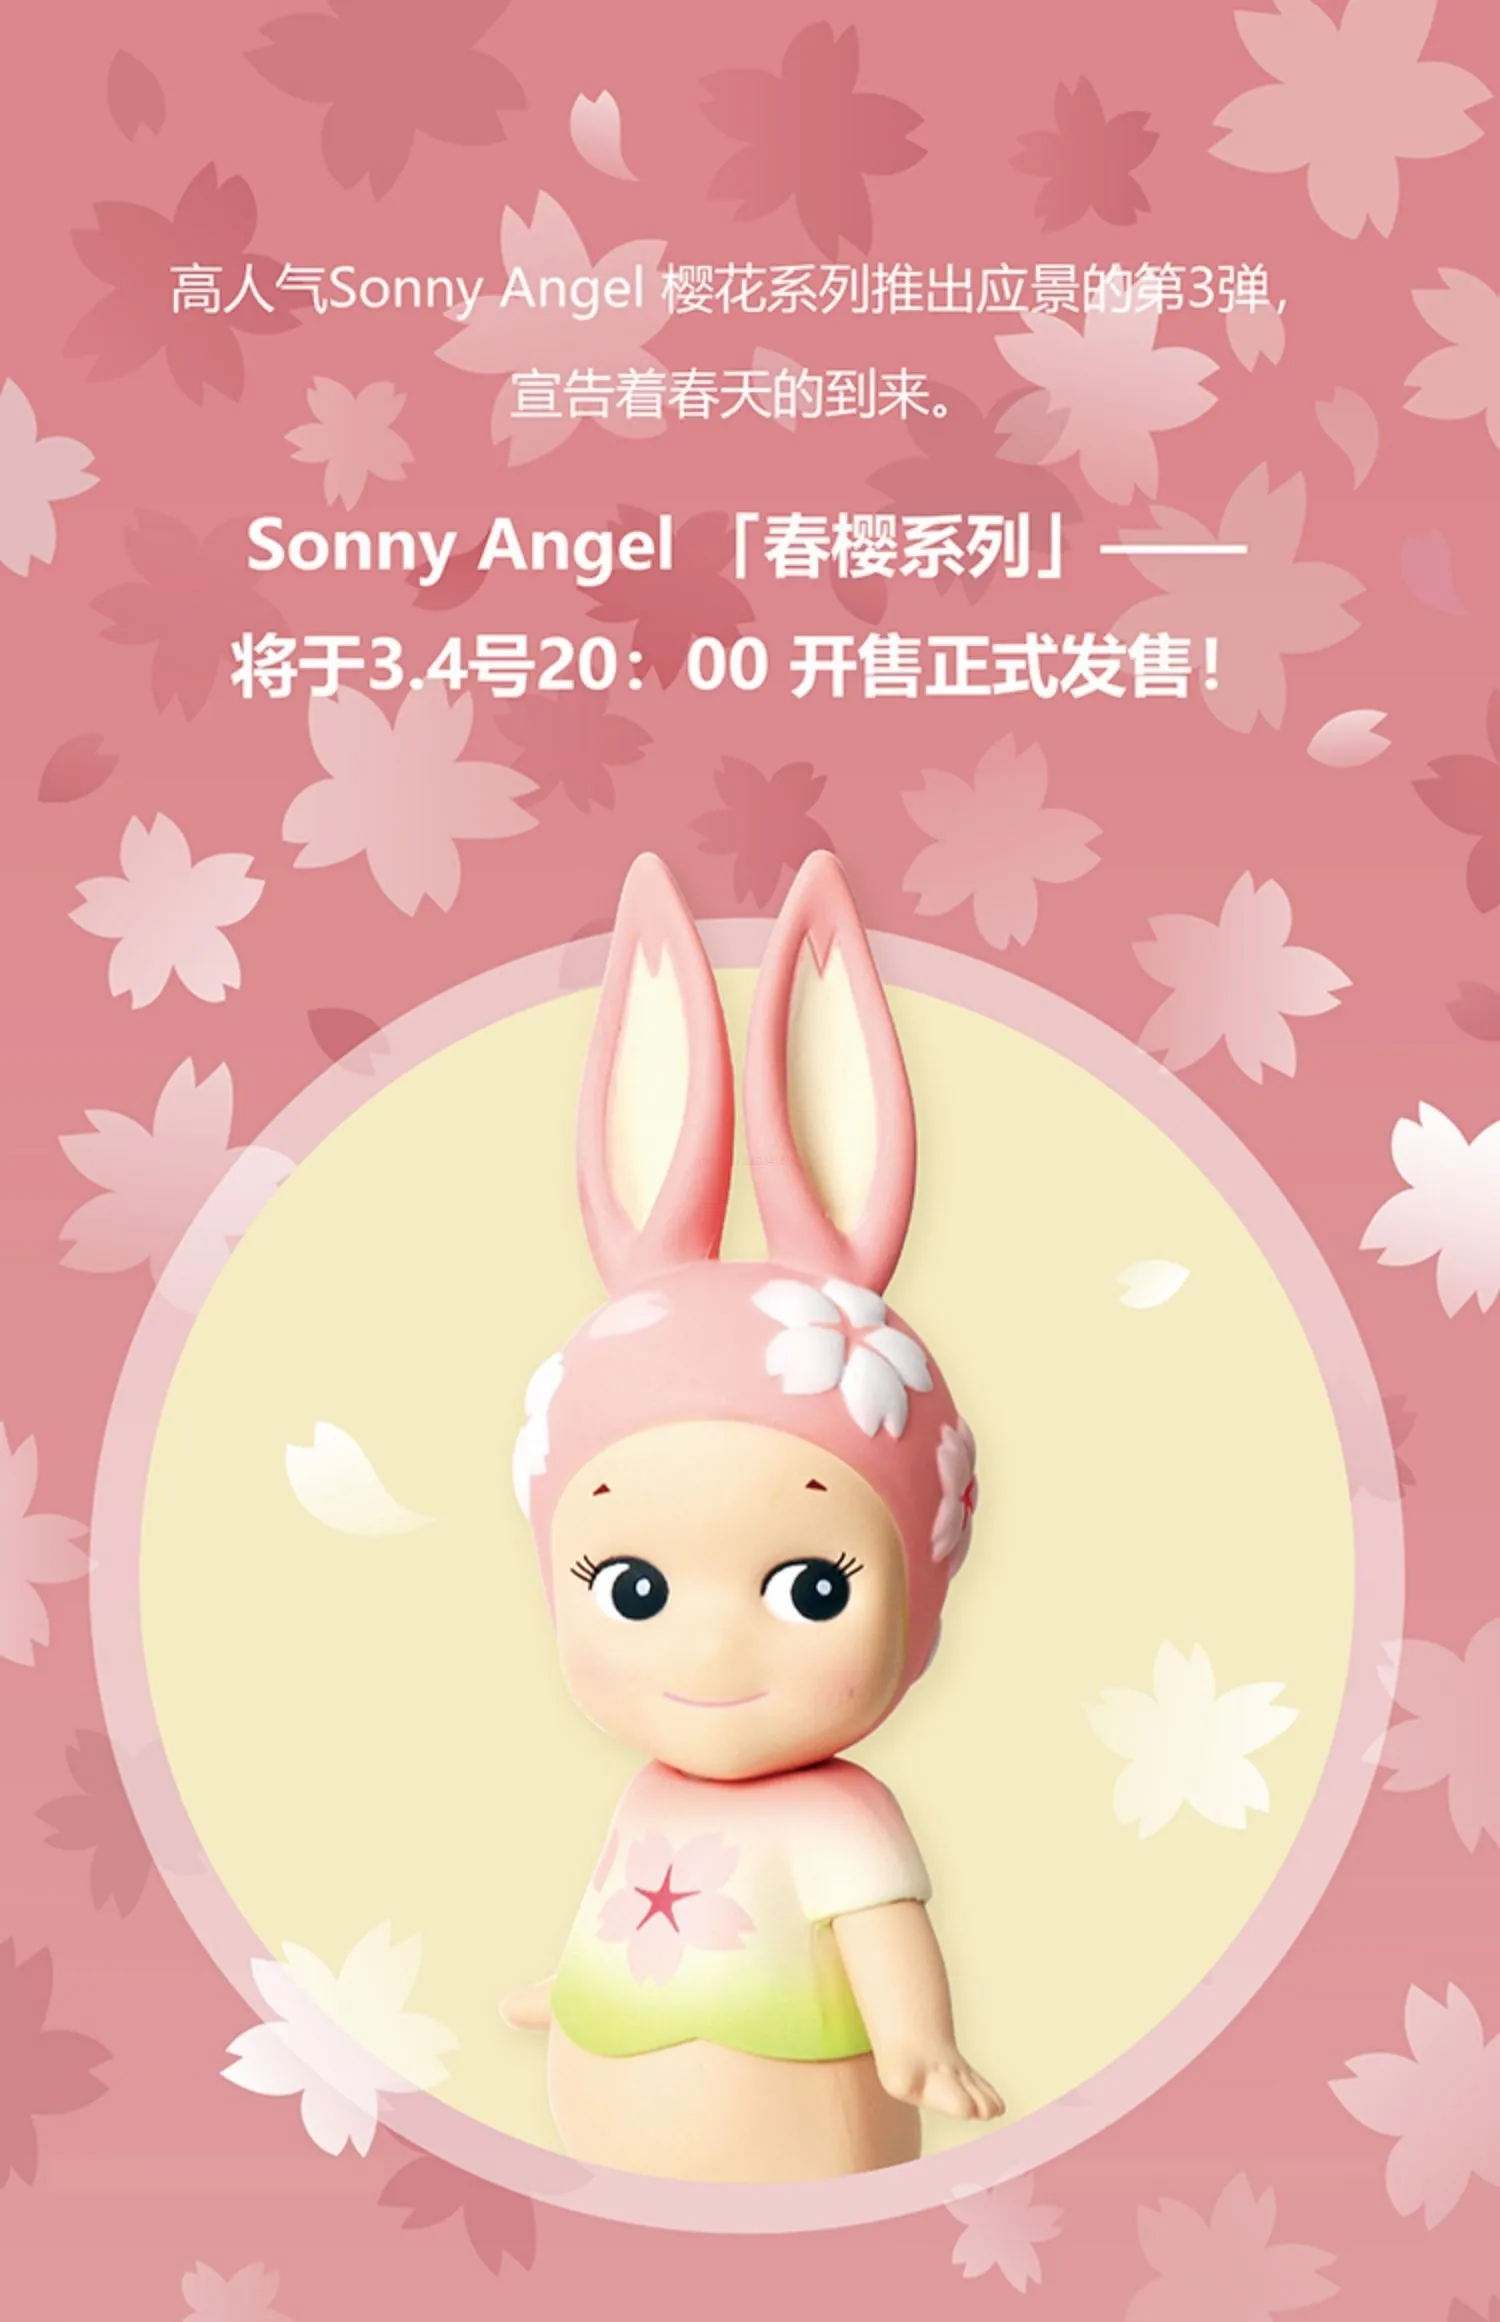 Серия Sonny Angel Cherry Blossom Mystery Box Blind Box Surprise Kawaii Box Коллекция аниме-фигурок на День рождения, Милые Игрушки-куклы, подарок